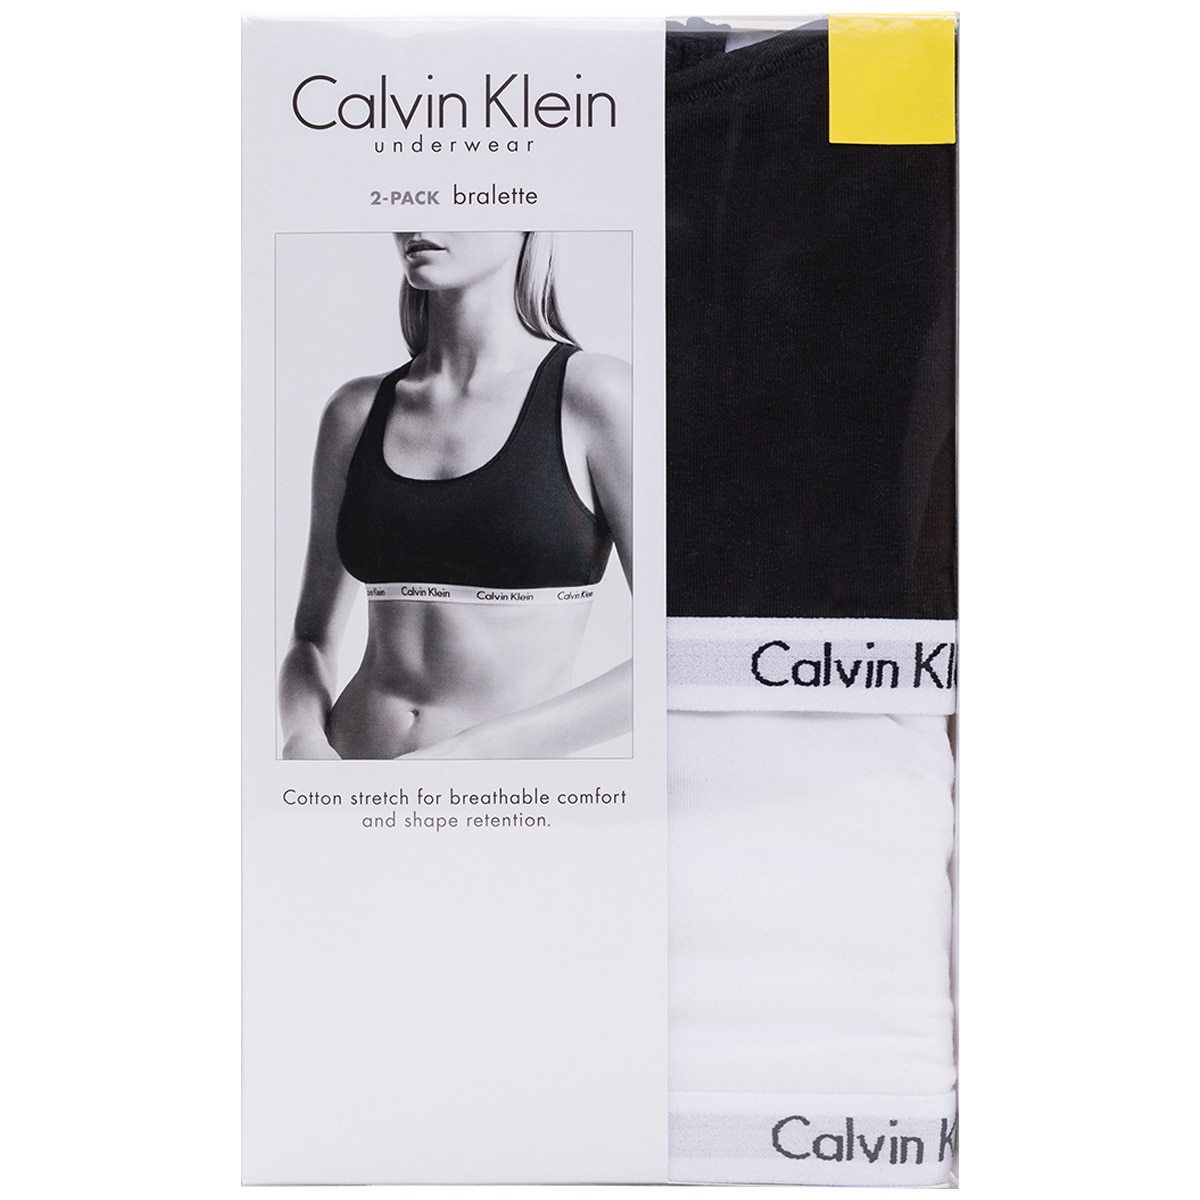 Calvin Klein Carousel Bralette 2 Pack - Denim/Grey